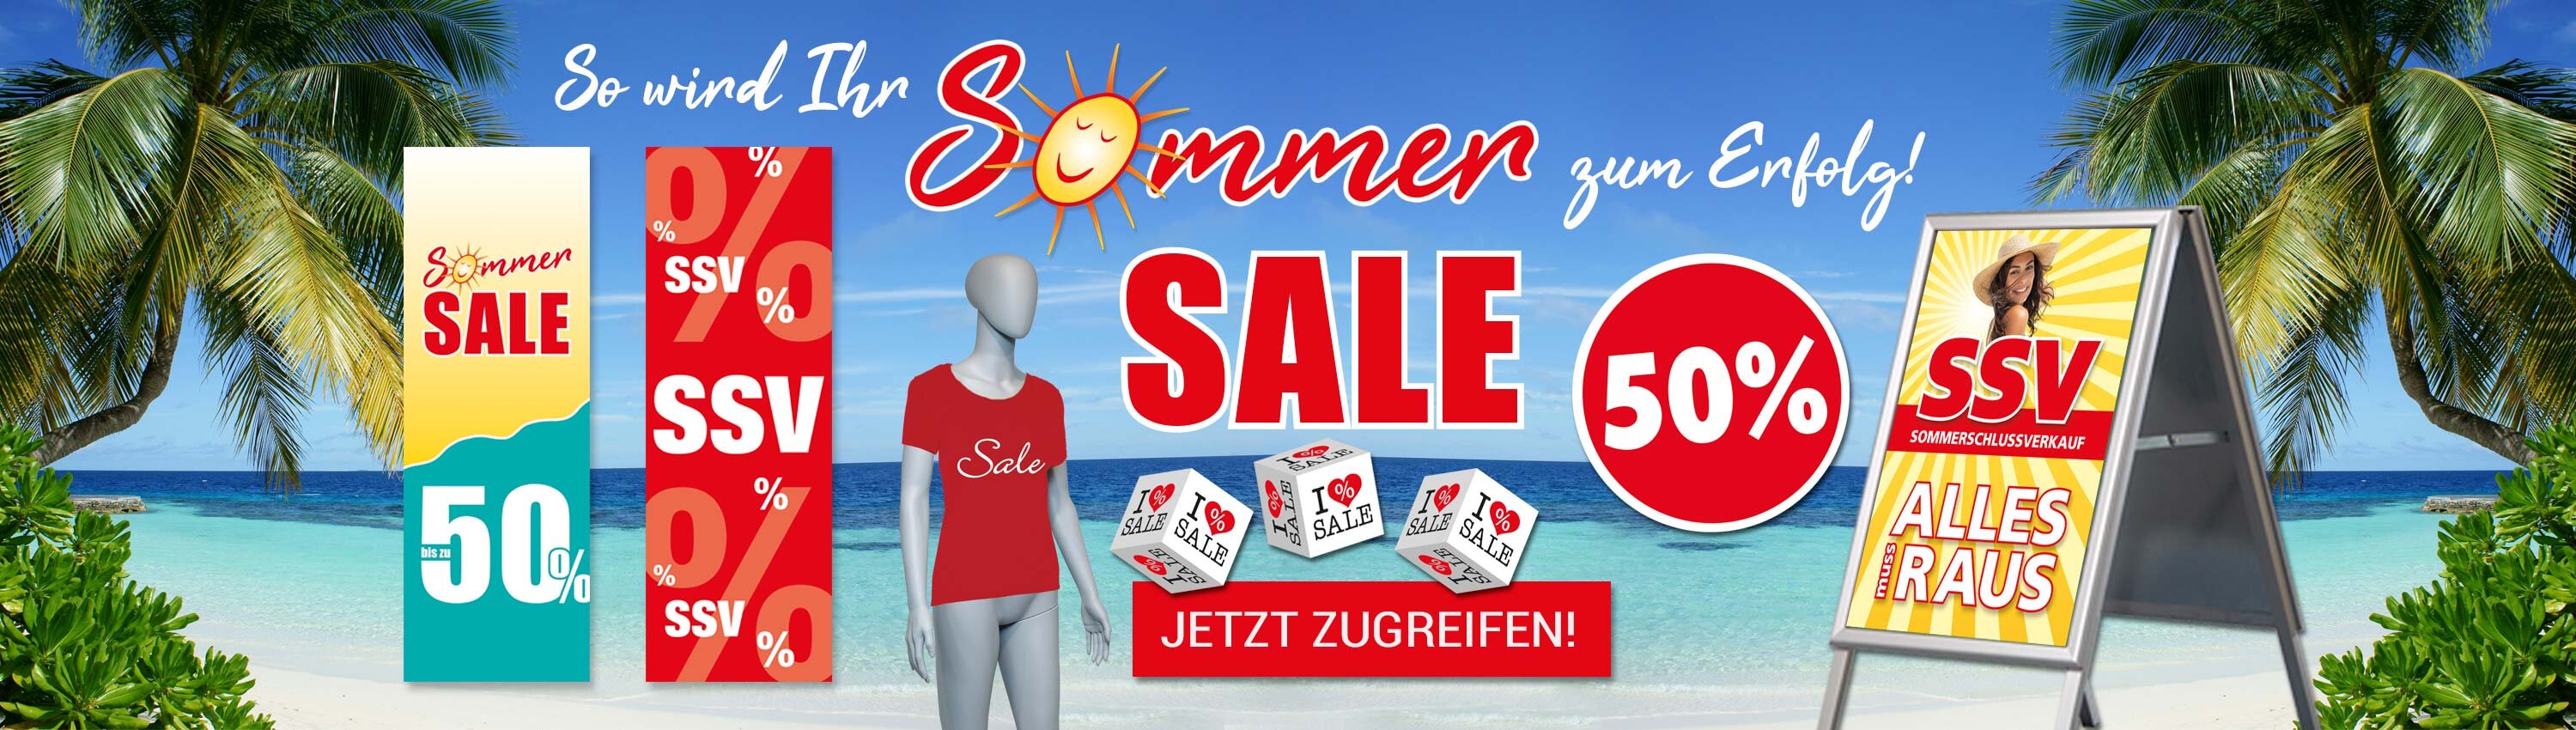 Sommer Sale - So wird Ihr Sommer zum Erfolg